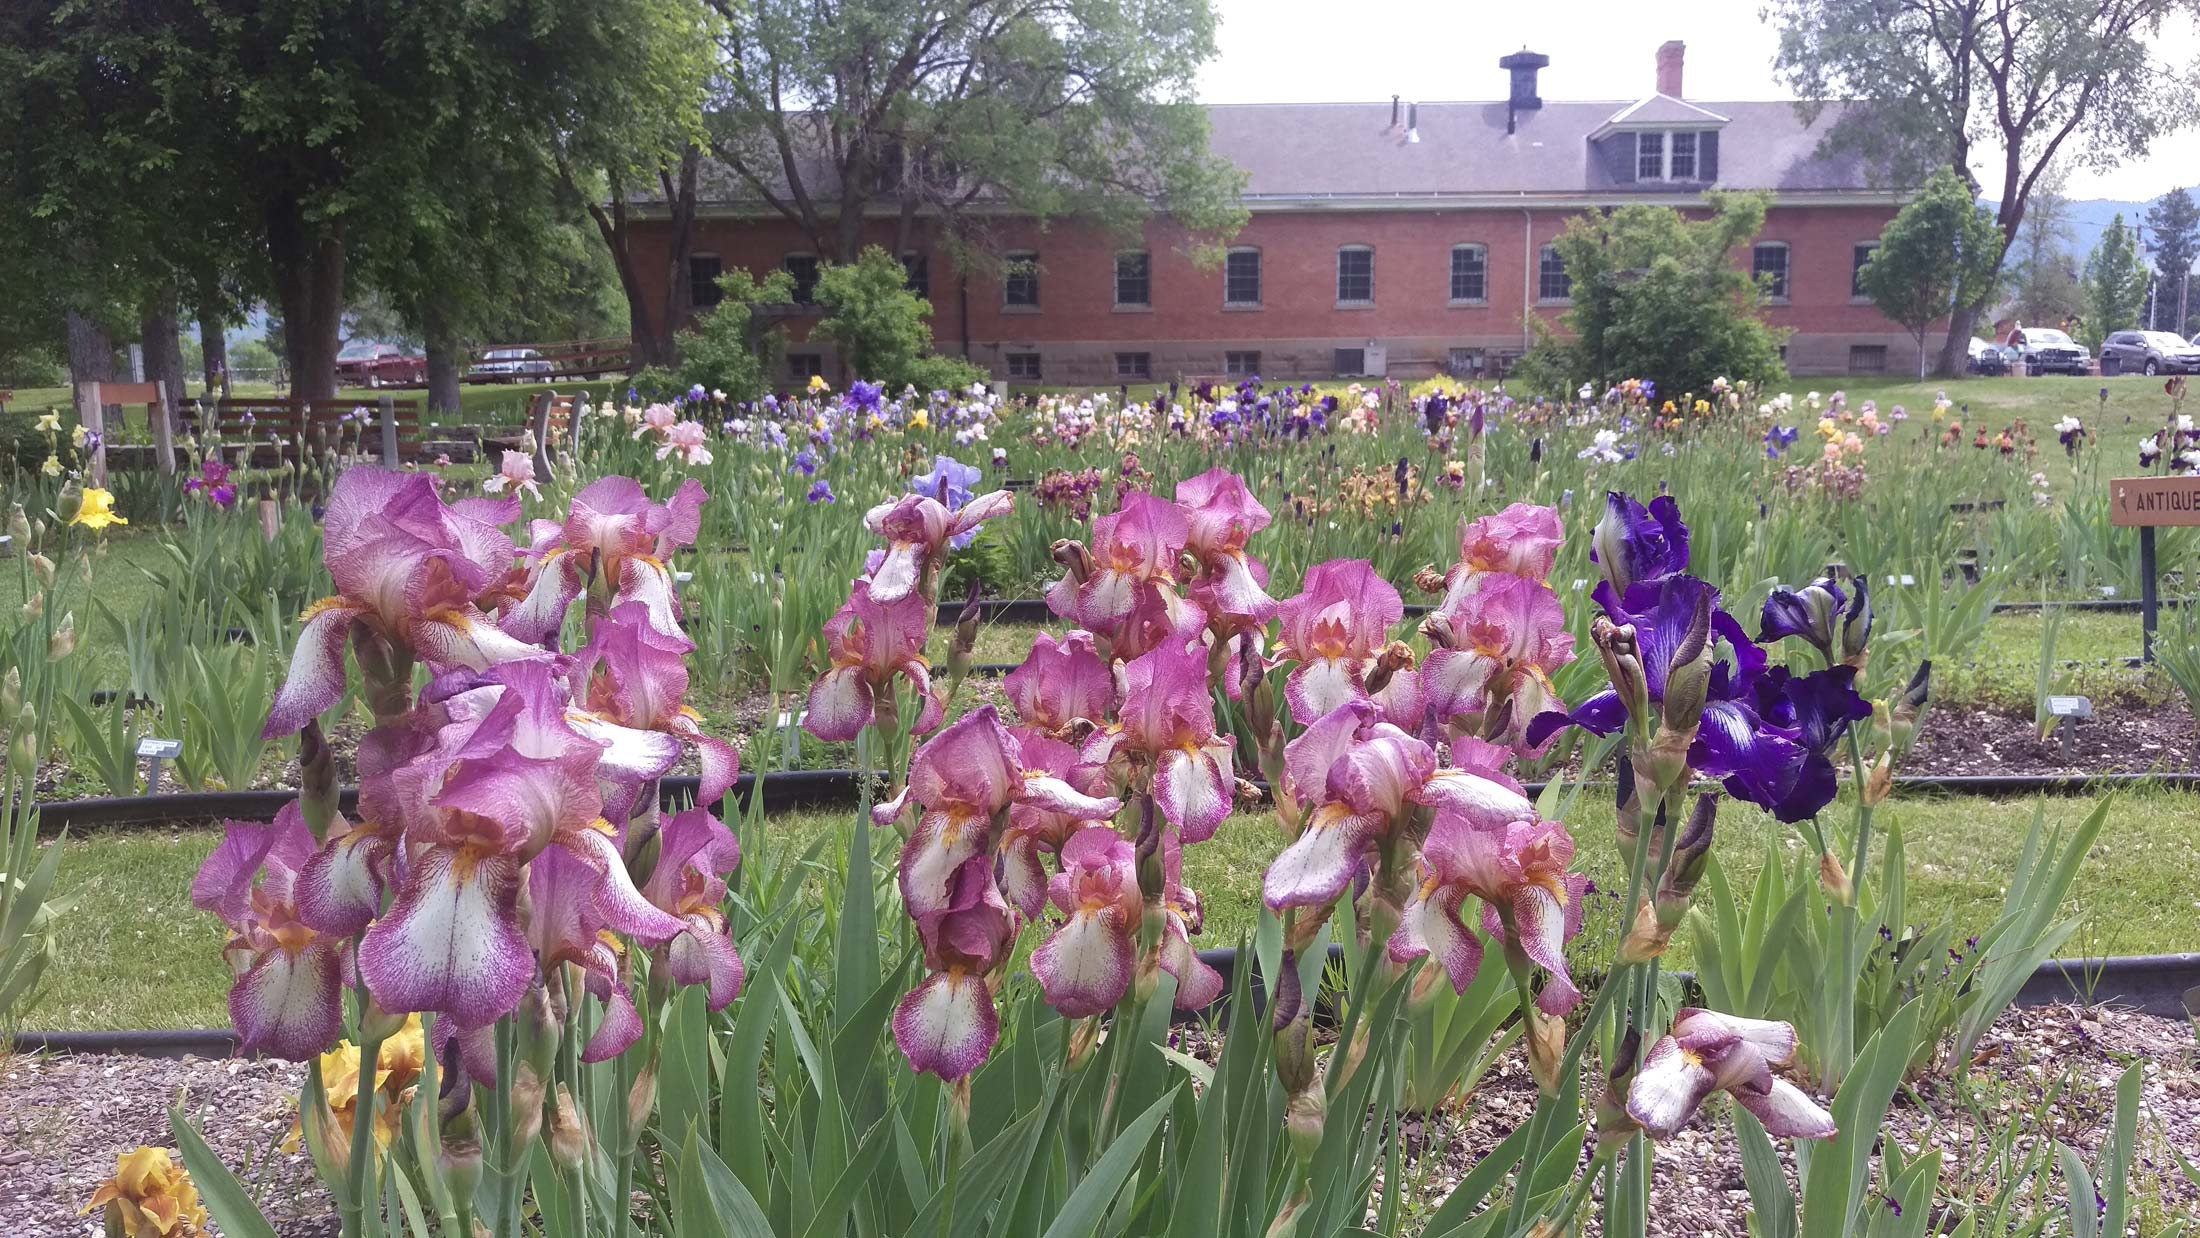 Irises in bloom in the Iris Garden